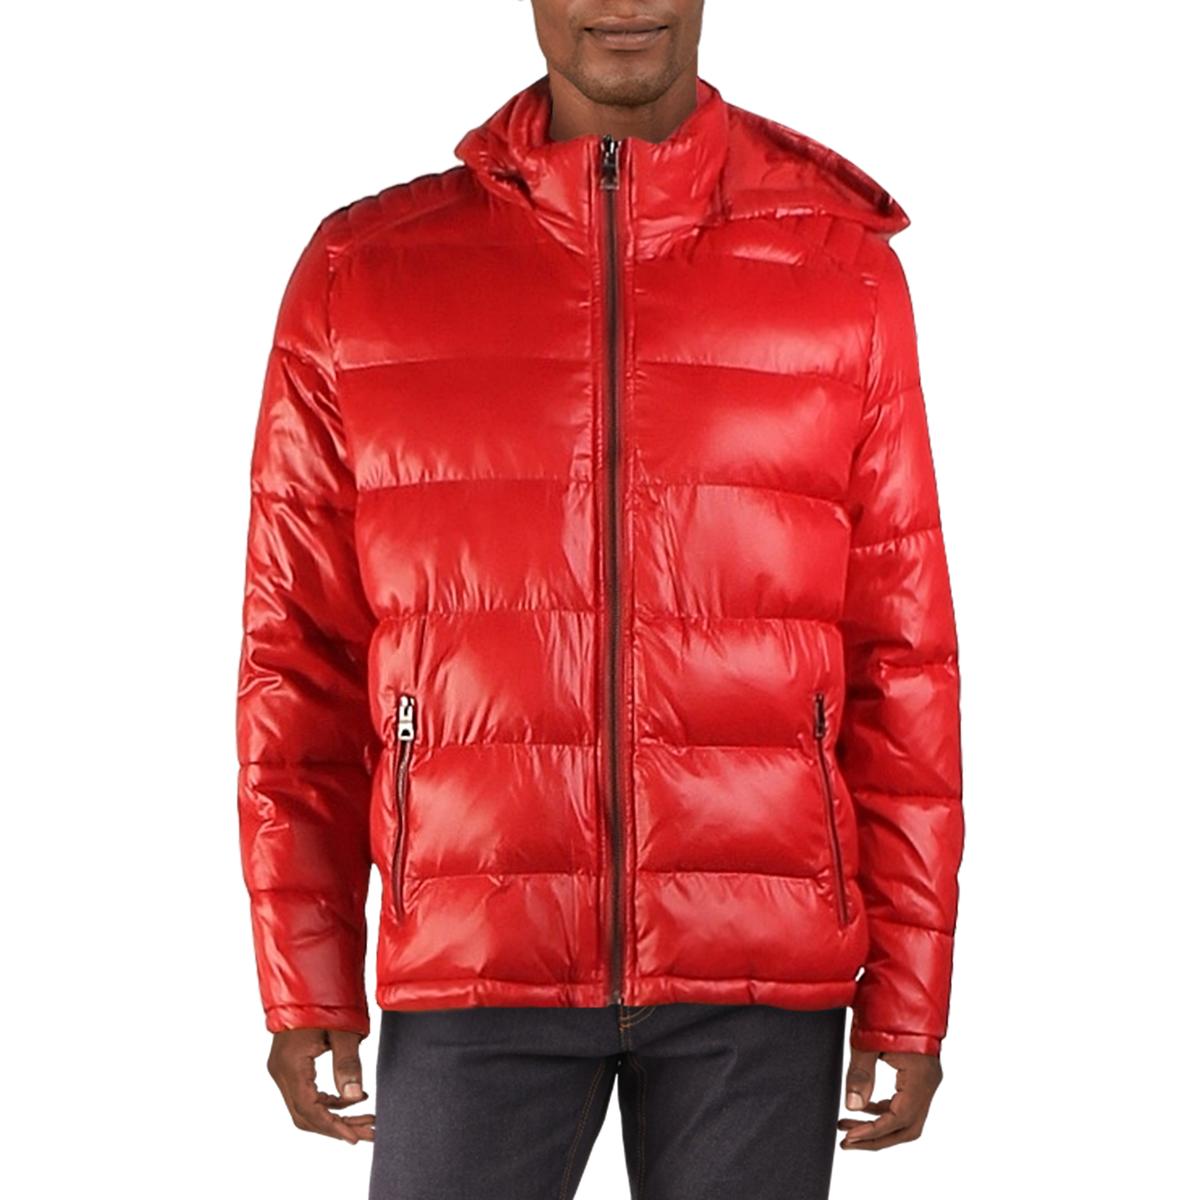 Guess Mens Red Lightweight Casual Short Puffer Coat Outerwear XL BHFO ...